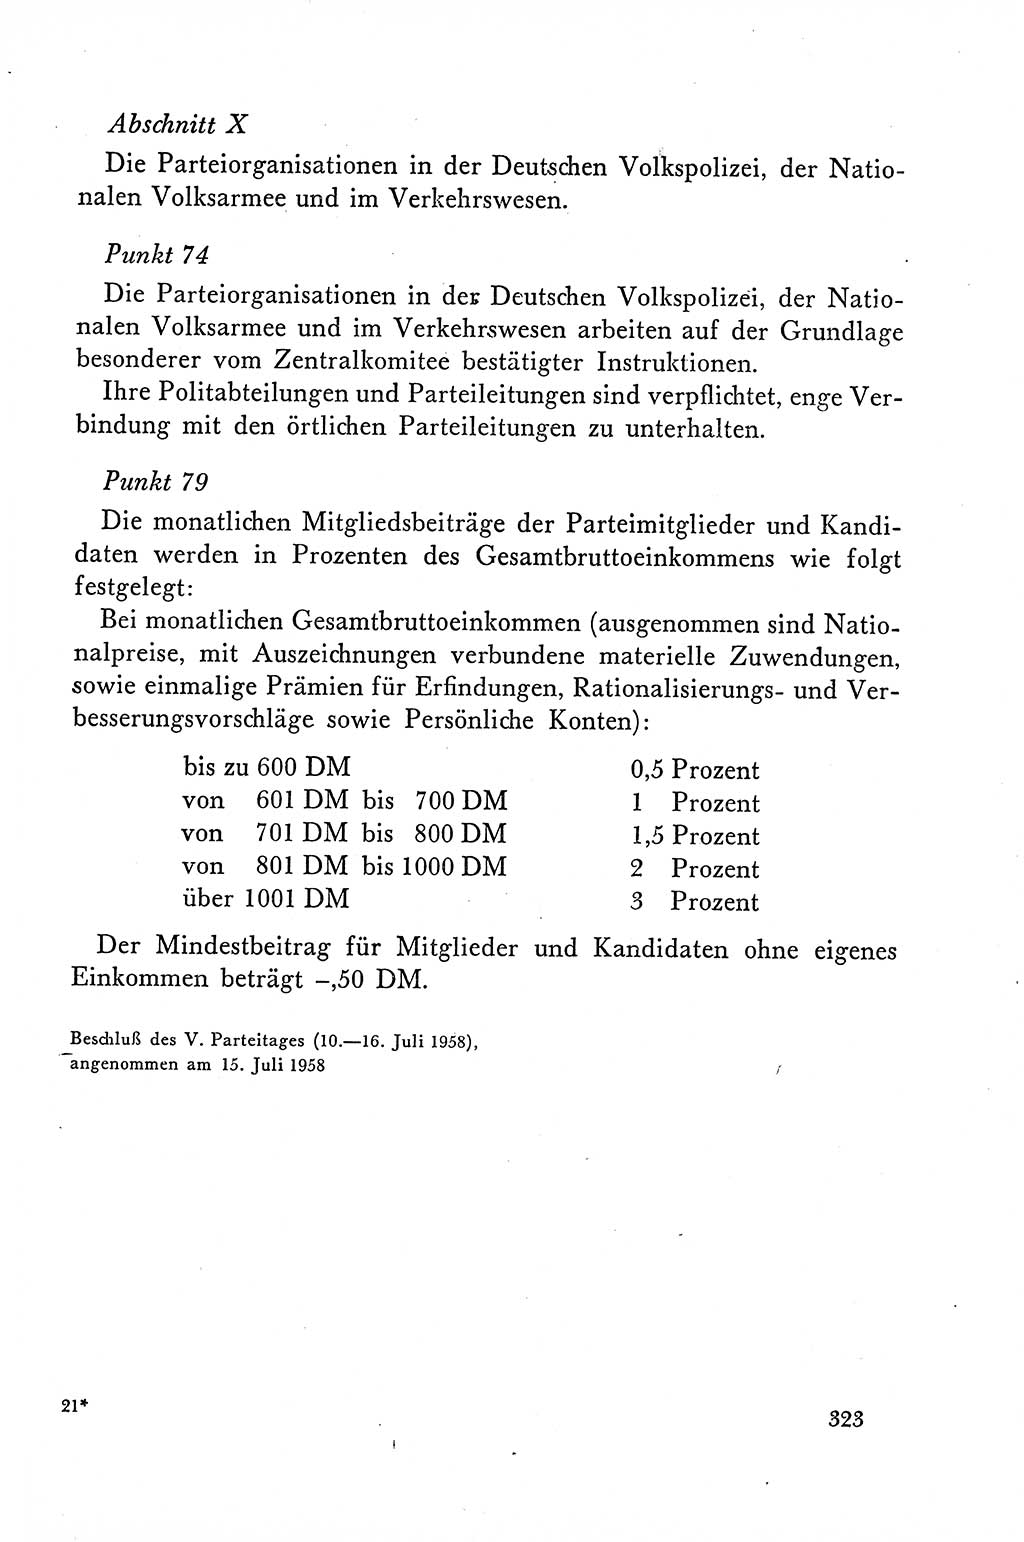 Dokumente der Sozialistischen Einheitspartei Deutschlands (SED) [Deutsche Demokratische Republik (DDR)] 1958-1959, Seite 323 (Dok. SED DDR 1958-1959, S. 323)